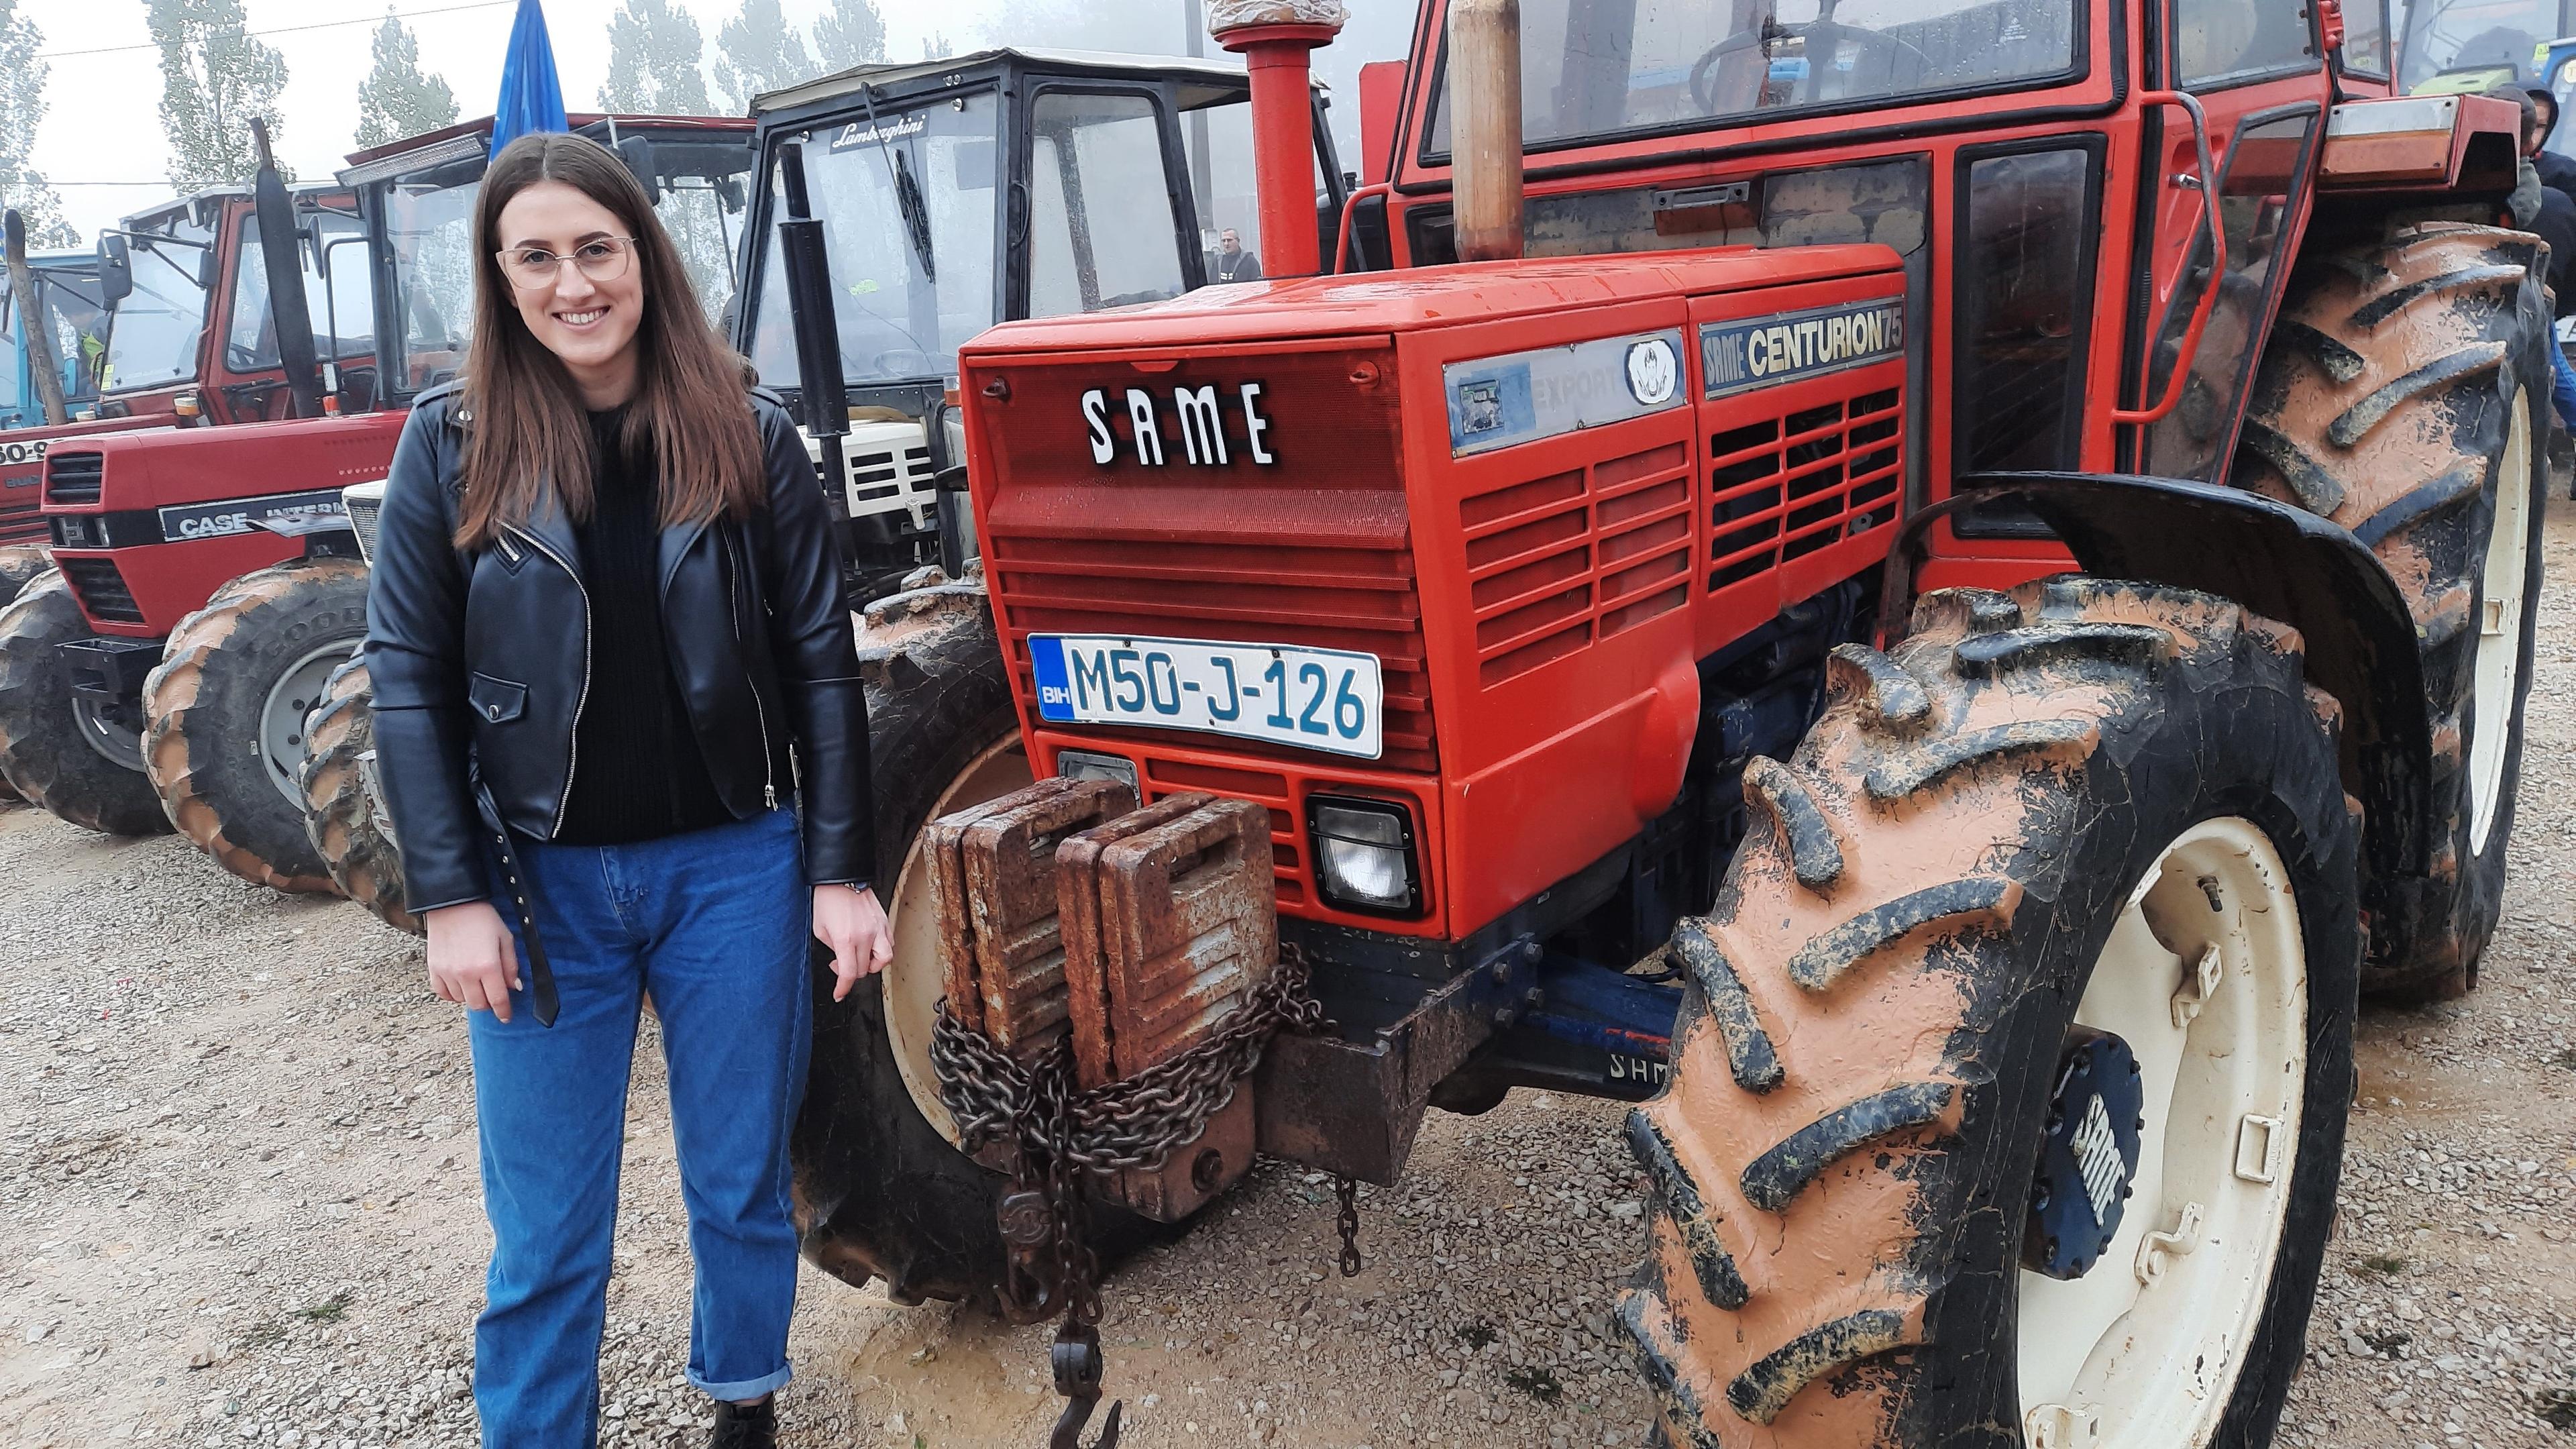 Ovo se rijetko viđa: Studentica Enida Halilović s lakoćom vozi veliki traktor i pomaže ocu u poljoprivrednim poslovima